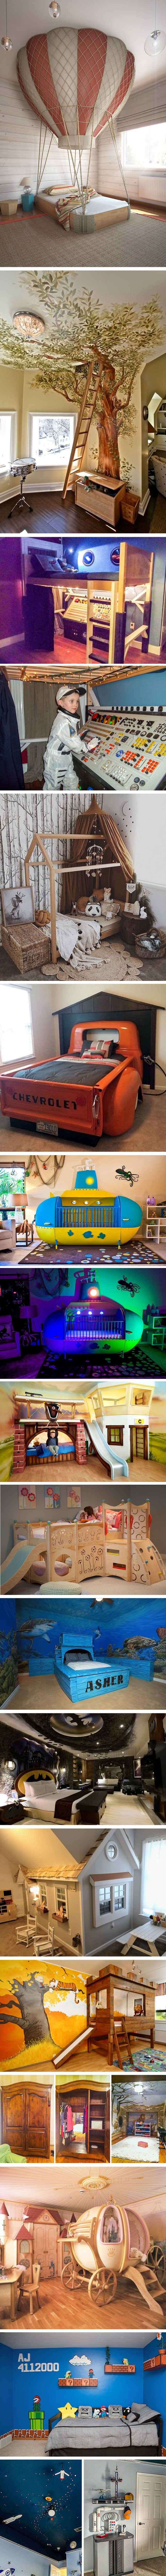 Kreativne dječje sobe i igraonice zbog kojih bi svatko ponovno poželio biti dijete